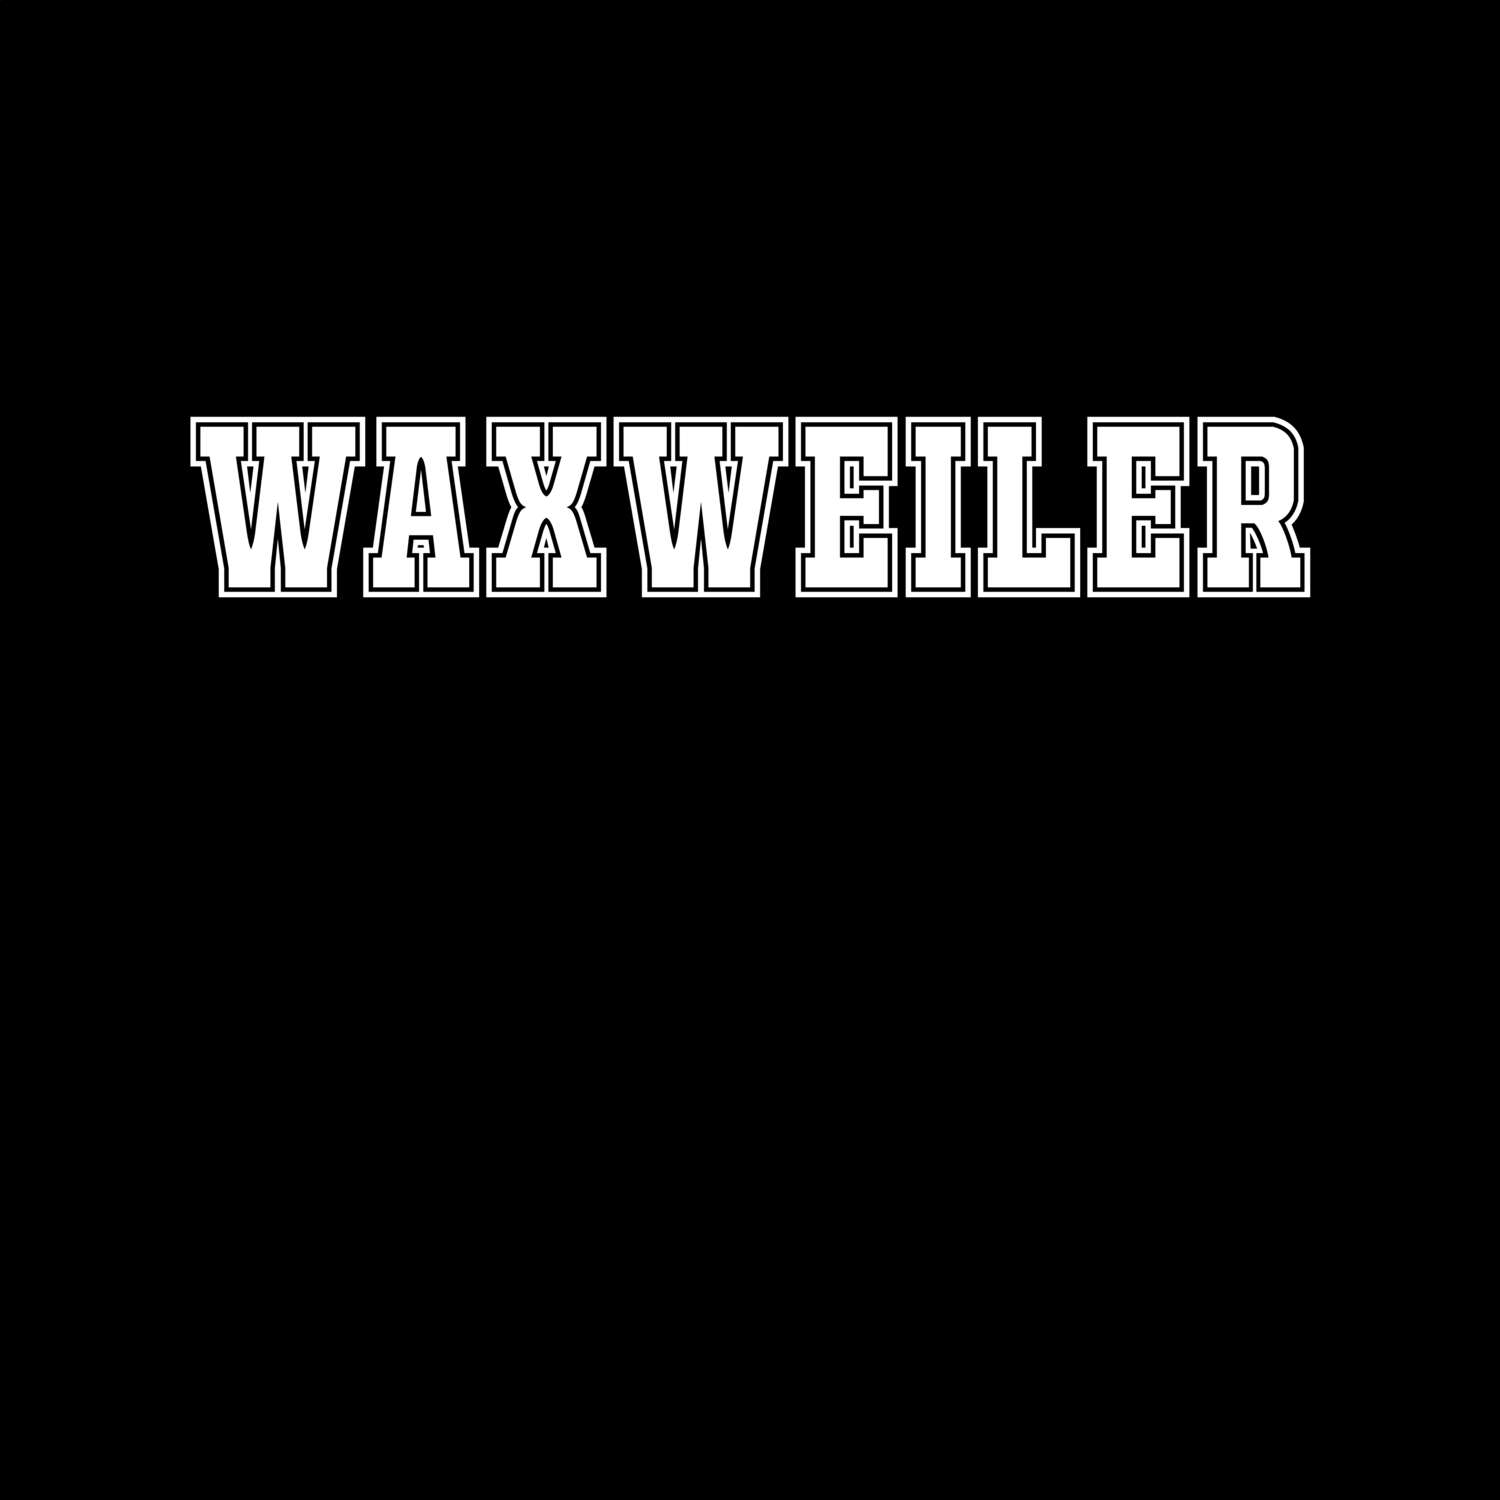 Waxweiler T-Shirt »Classic«